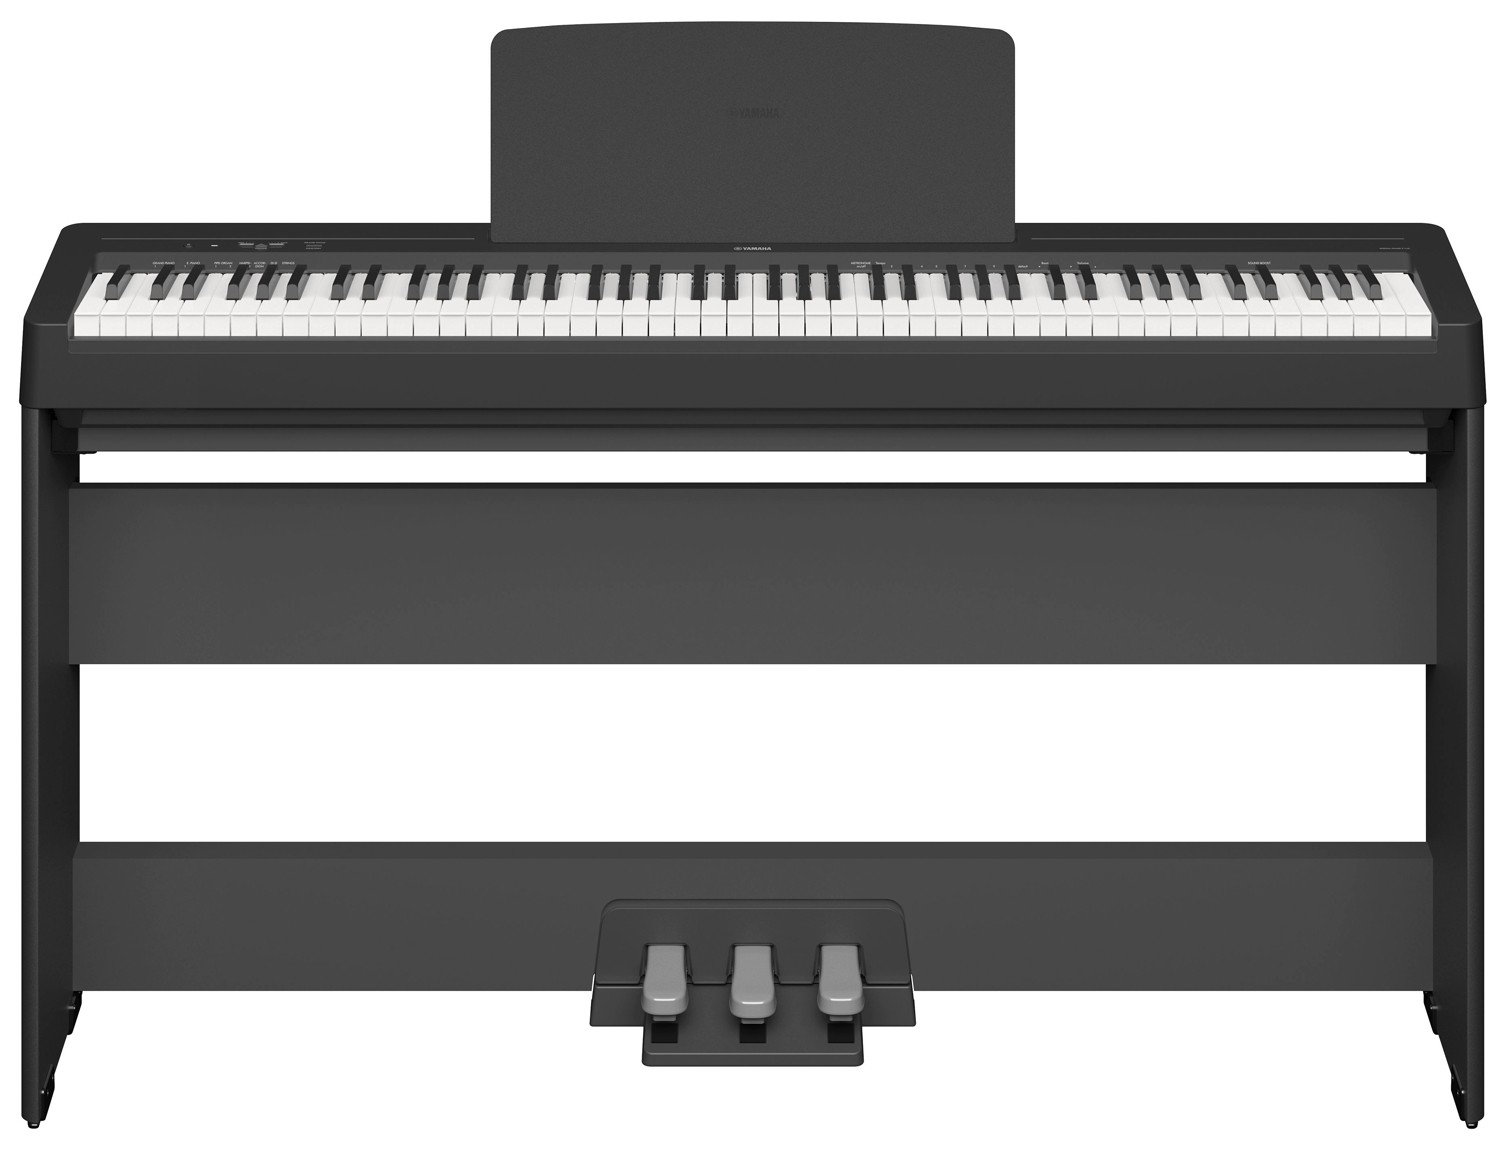 Quels sont les accessoires essentiels pour son piano numérique